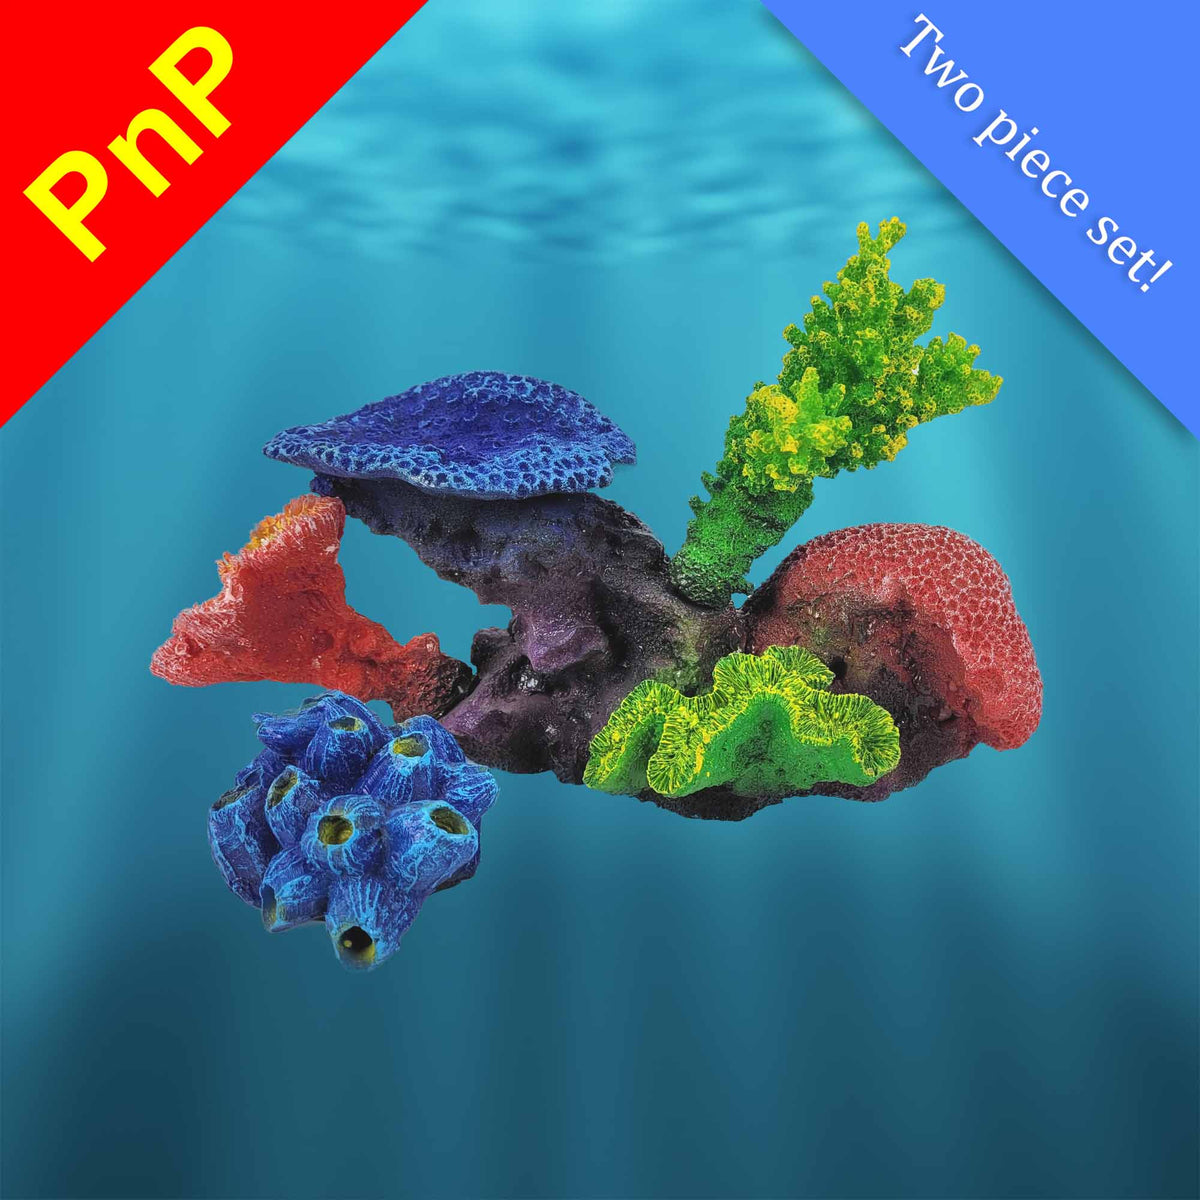 PNP0009 Artificial Fake Coral Aquarium Decor for Marine Tanks